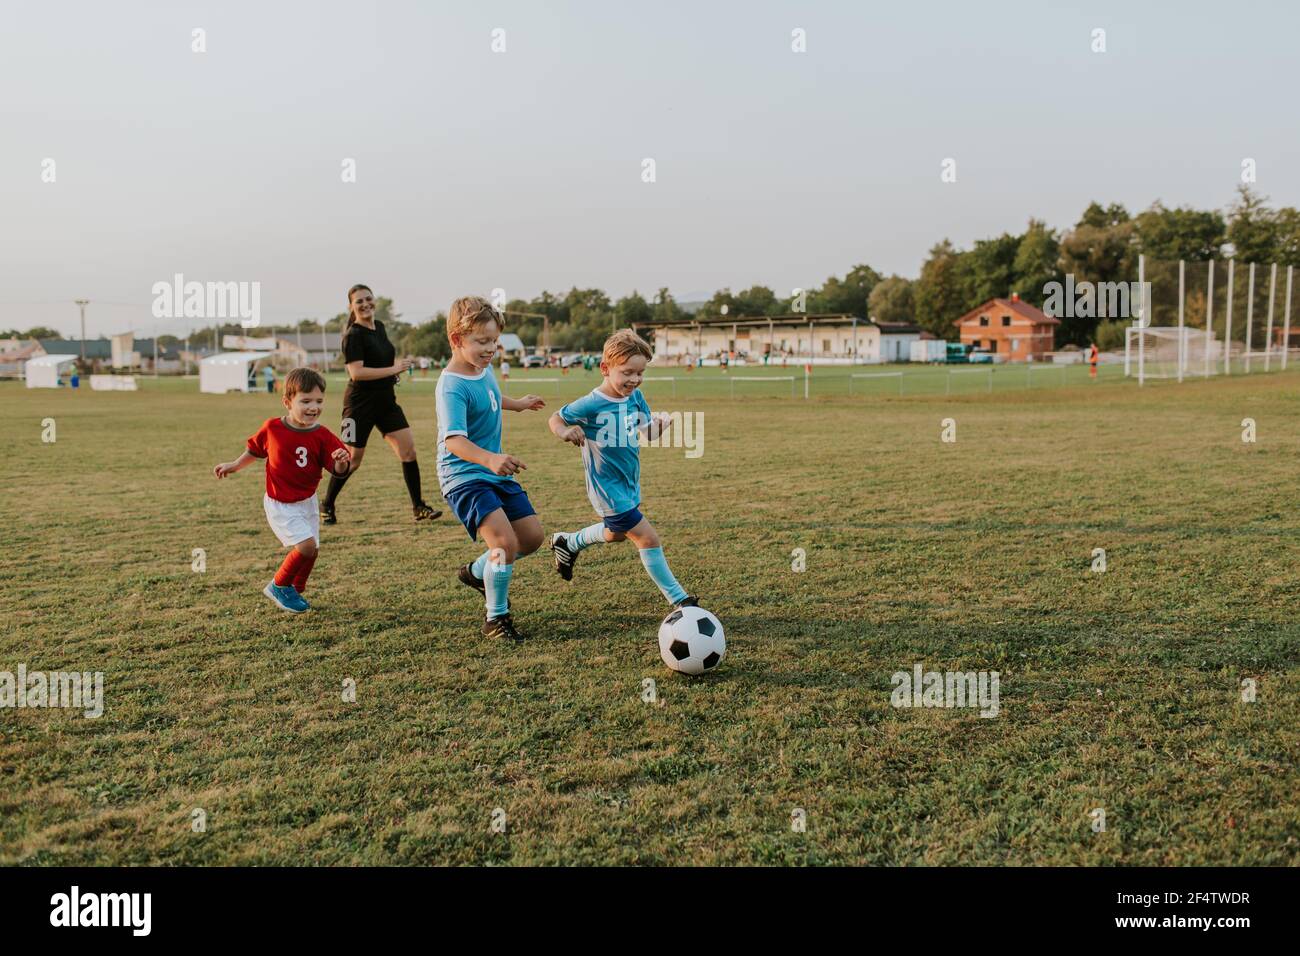 Bambini che giocano a calcio. Gruppo di giocatori di calcio felici che corrono dopo la palla sul campo. Foto Stock